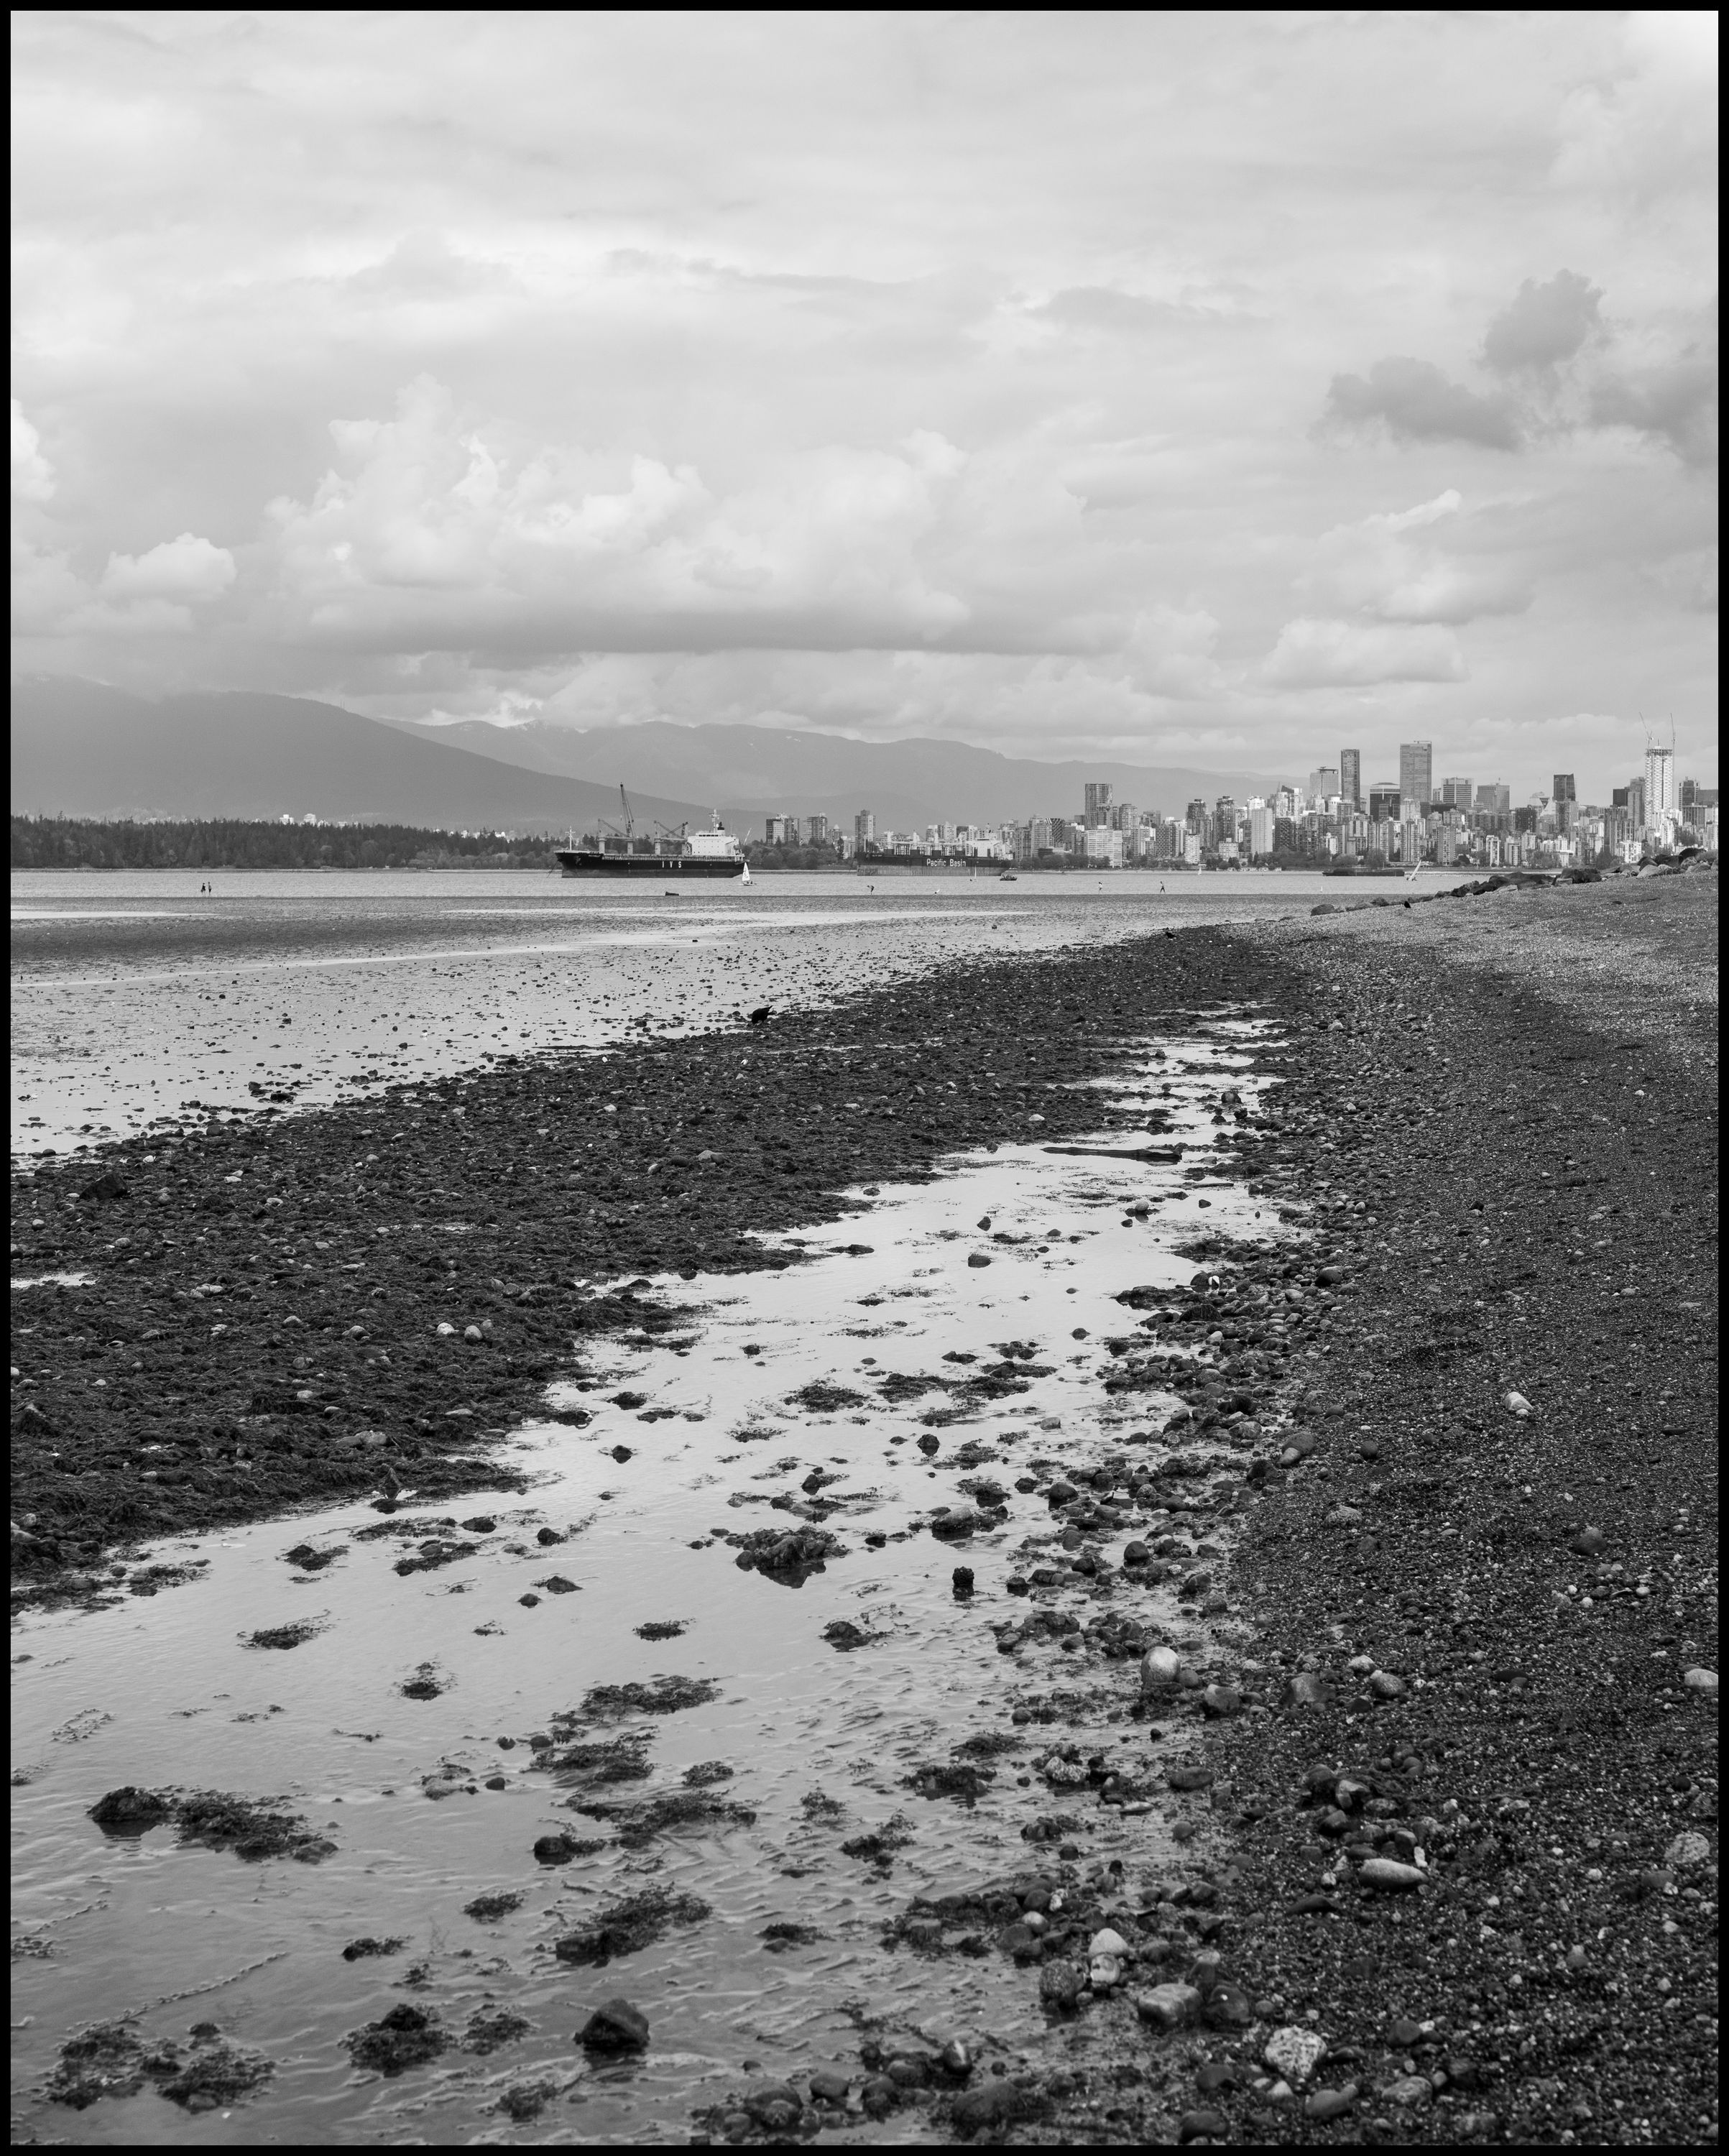 Intertidal Zone. Leica SL2 & Sigma 45mm f2.8